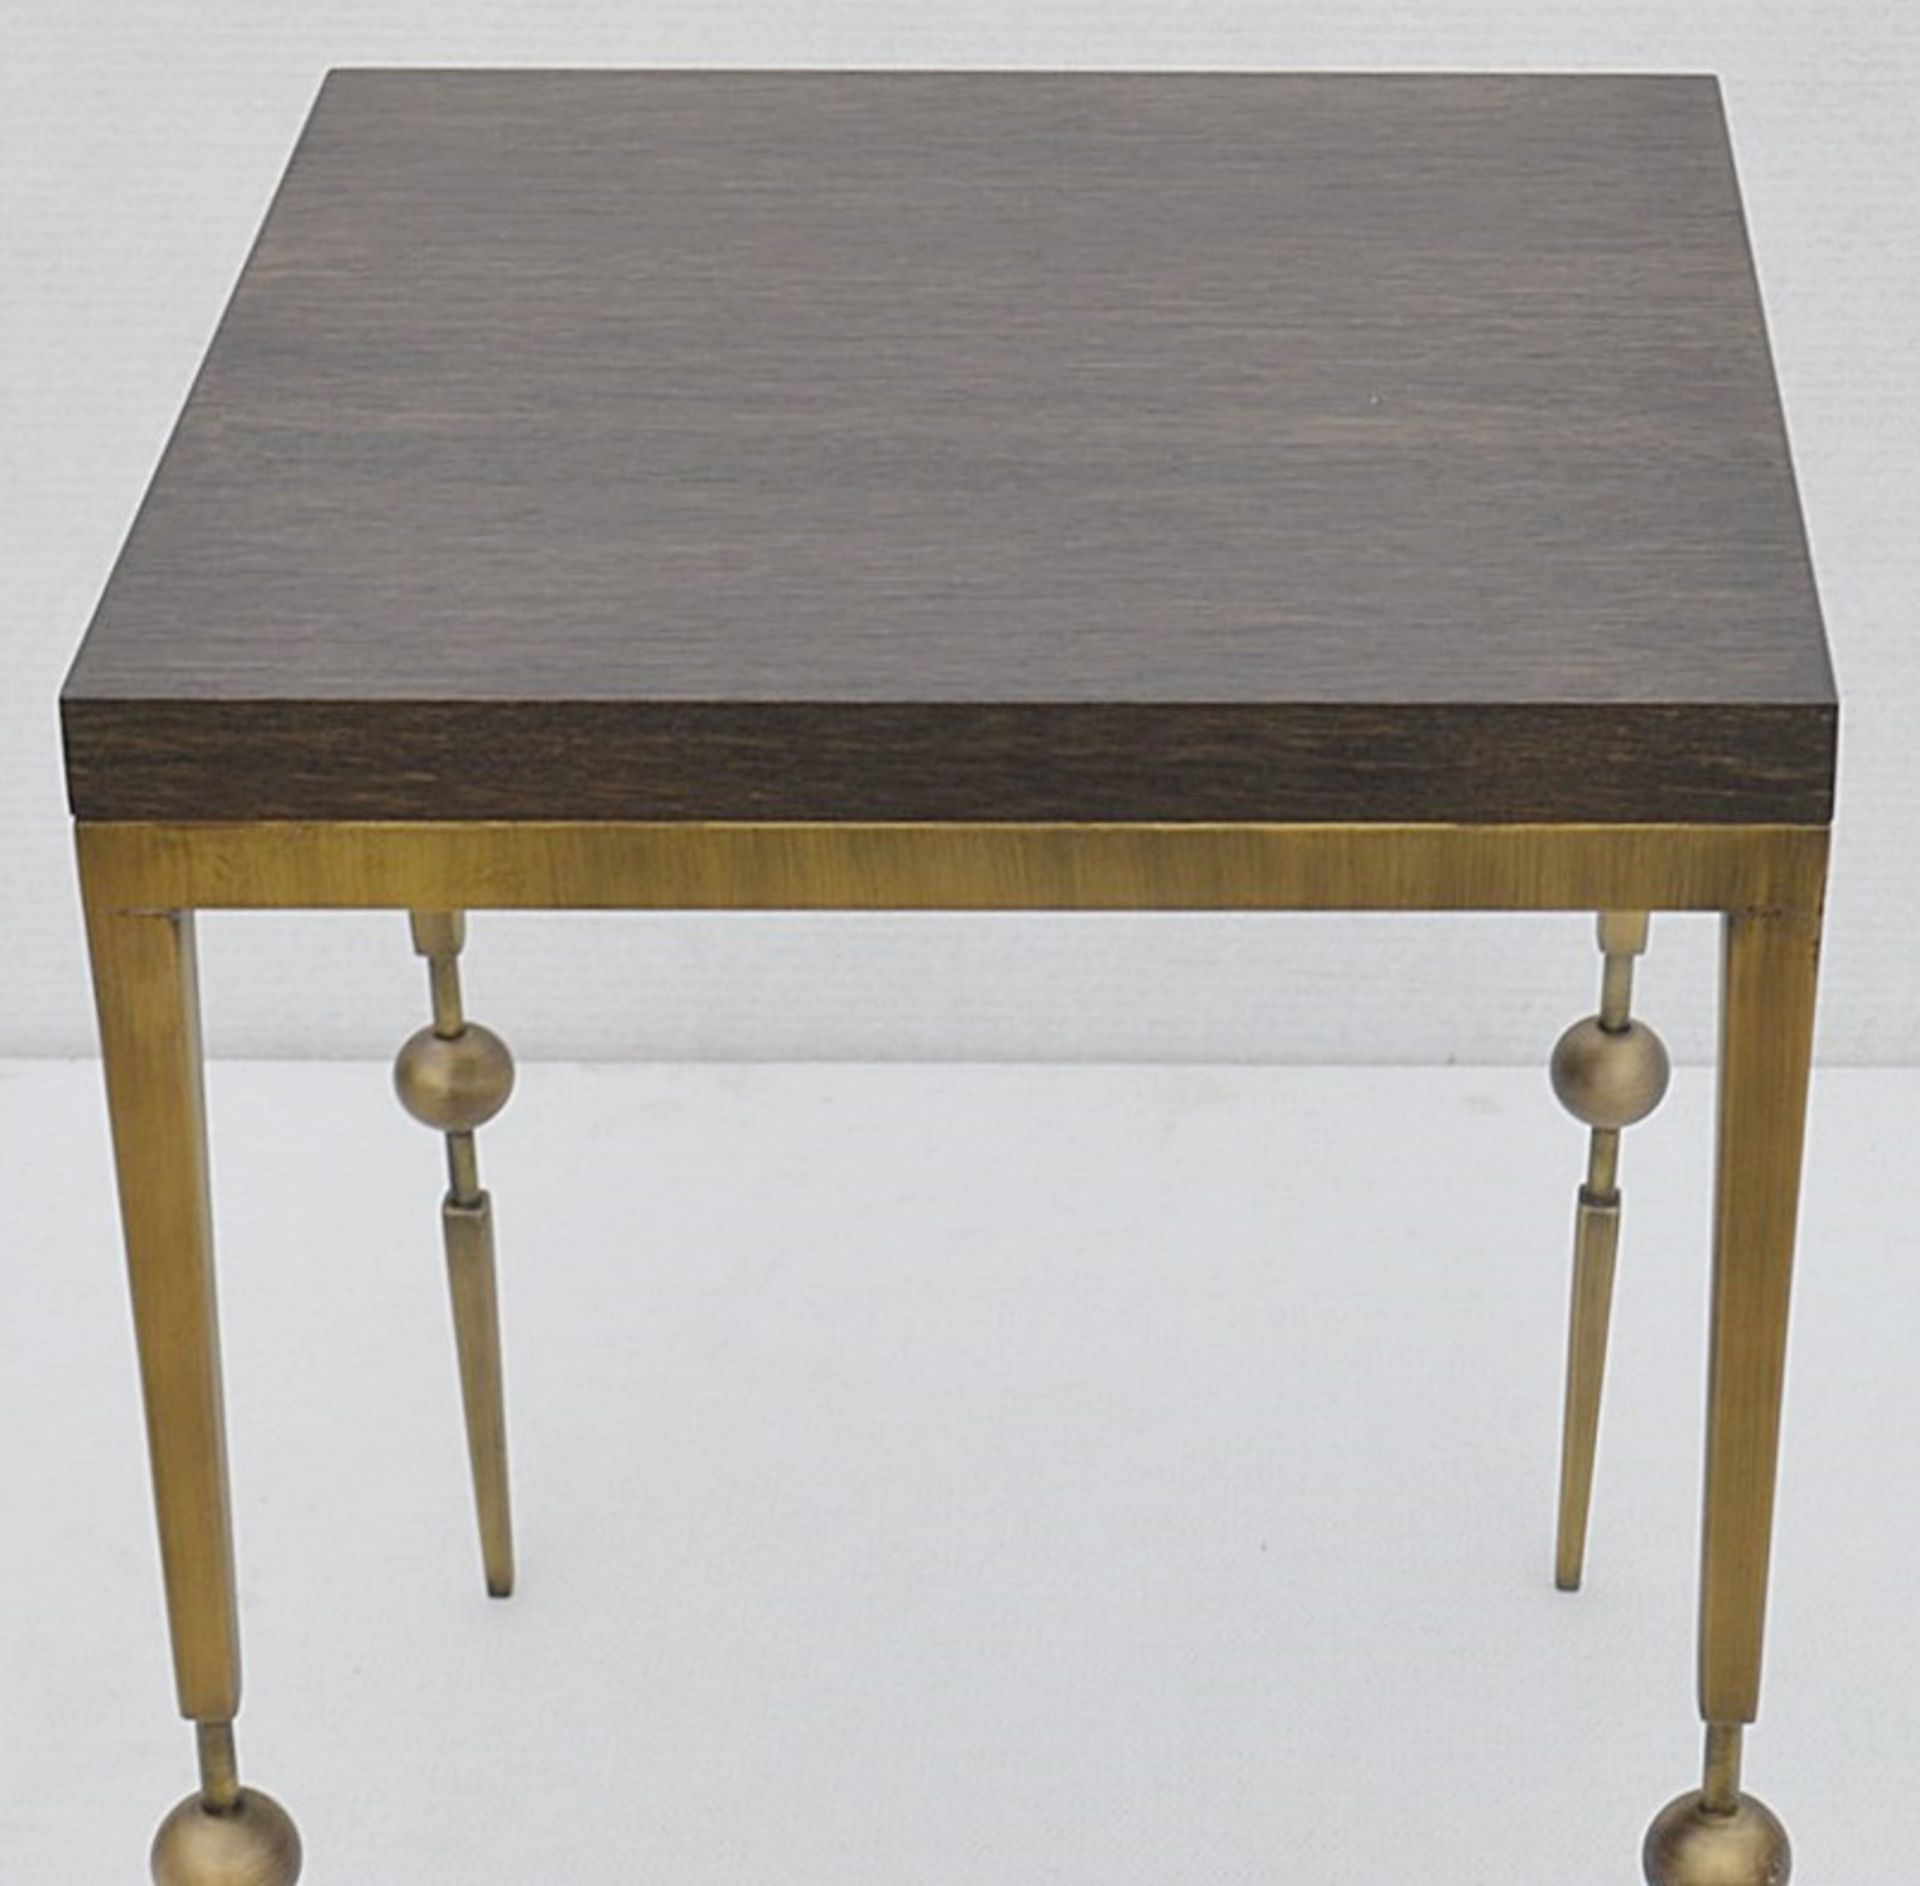 1 x JUSTIN VAN BREDA 'Sphere' Designer Occasional Table *NO RESERVE* Original RRP £1,200 - Image 3 of 7